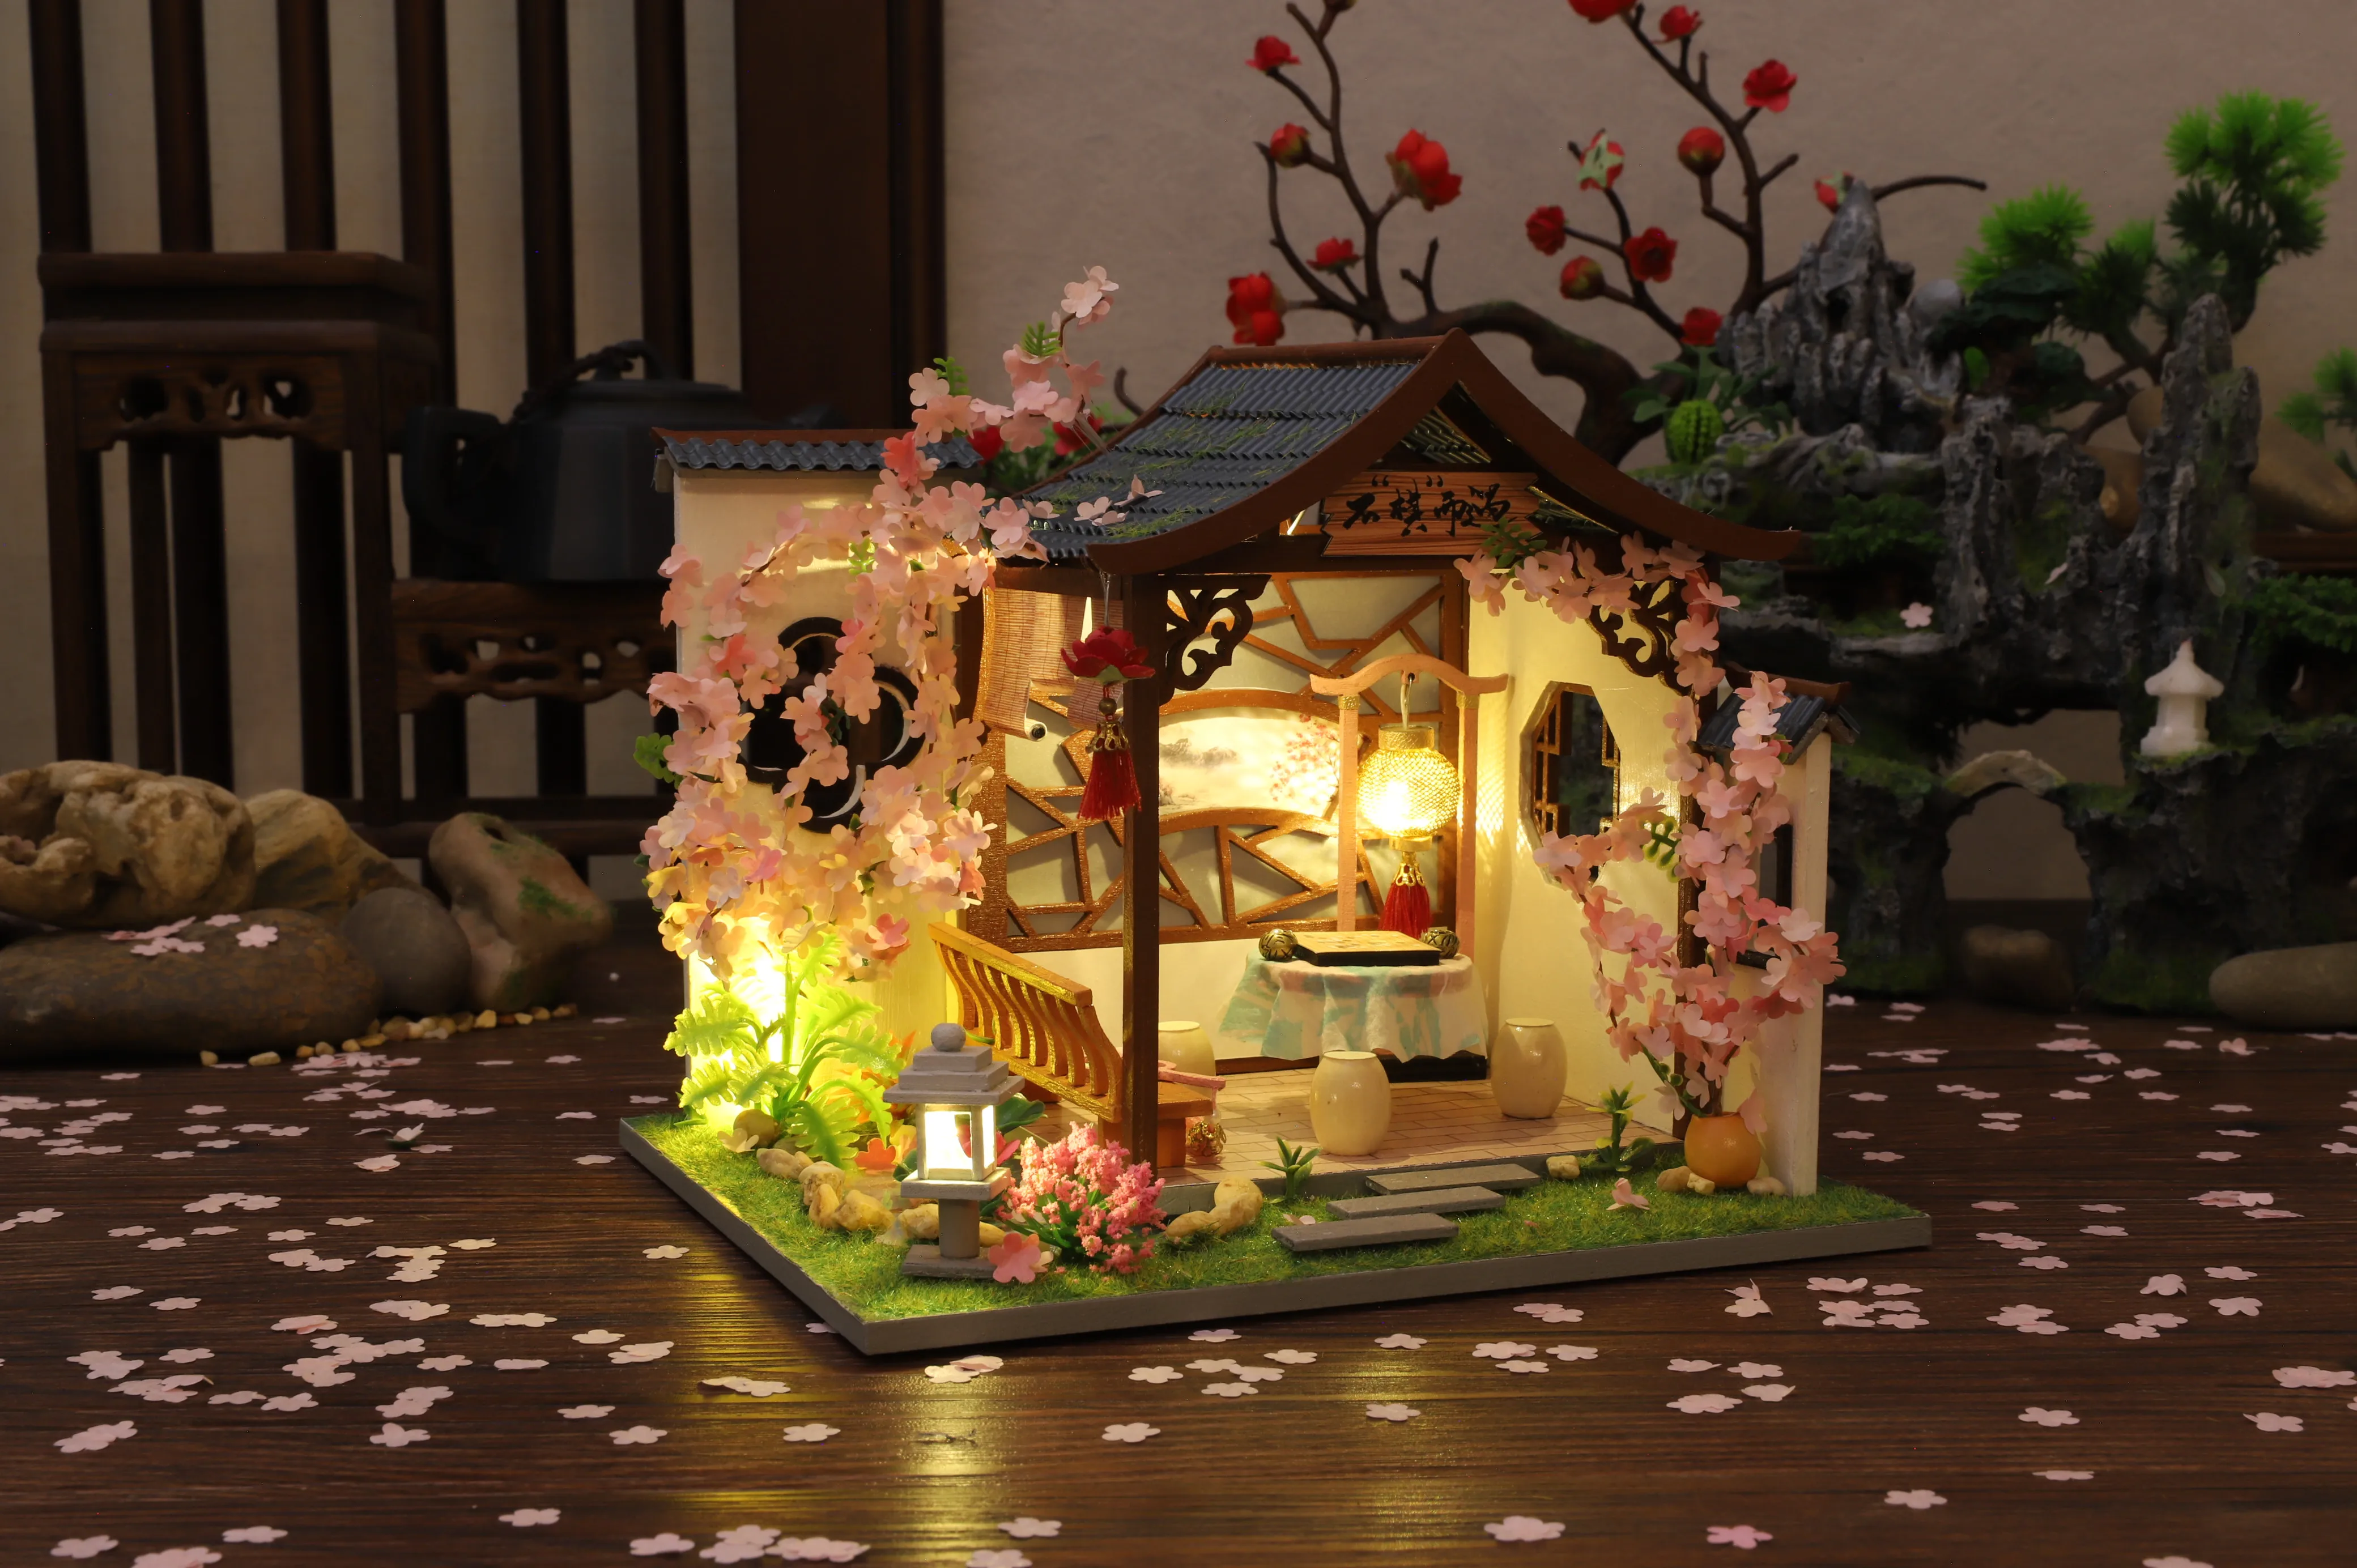 casa de boneca com flor de cerejeira,